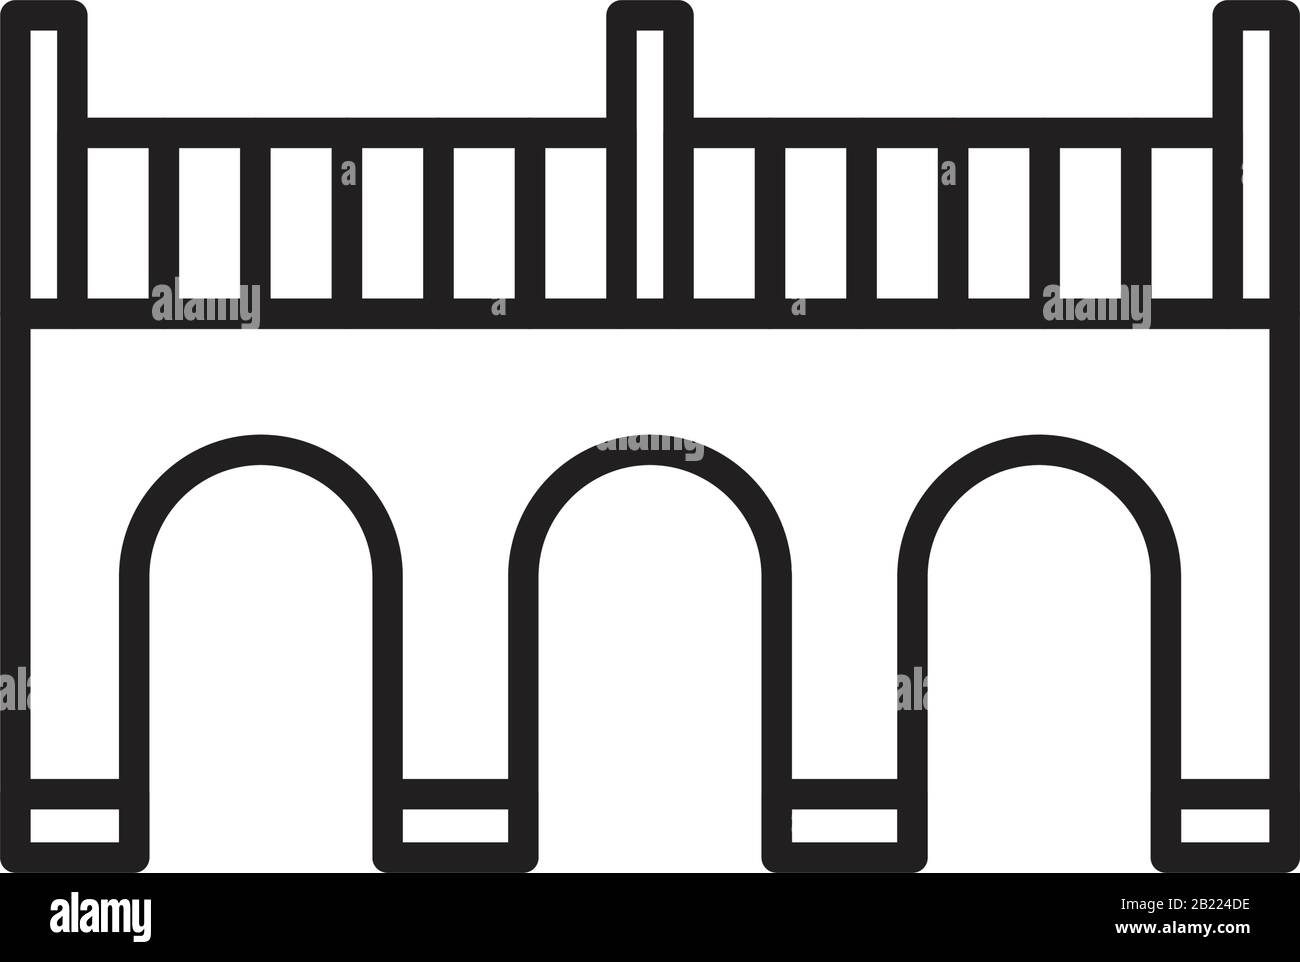 Modèle D'Icône de ligne de ponts couleur noire modifiable. Icône de ligne de ponts illustration vectorielle plate pour la conception graphique et Web. Illustration de Vecteur